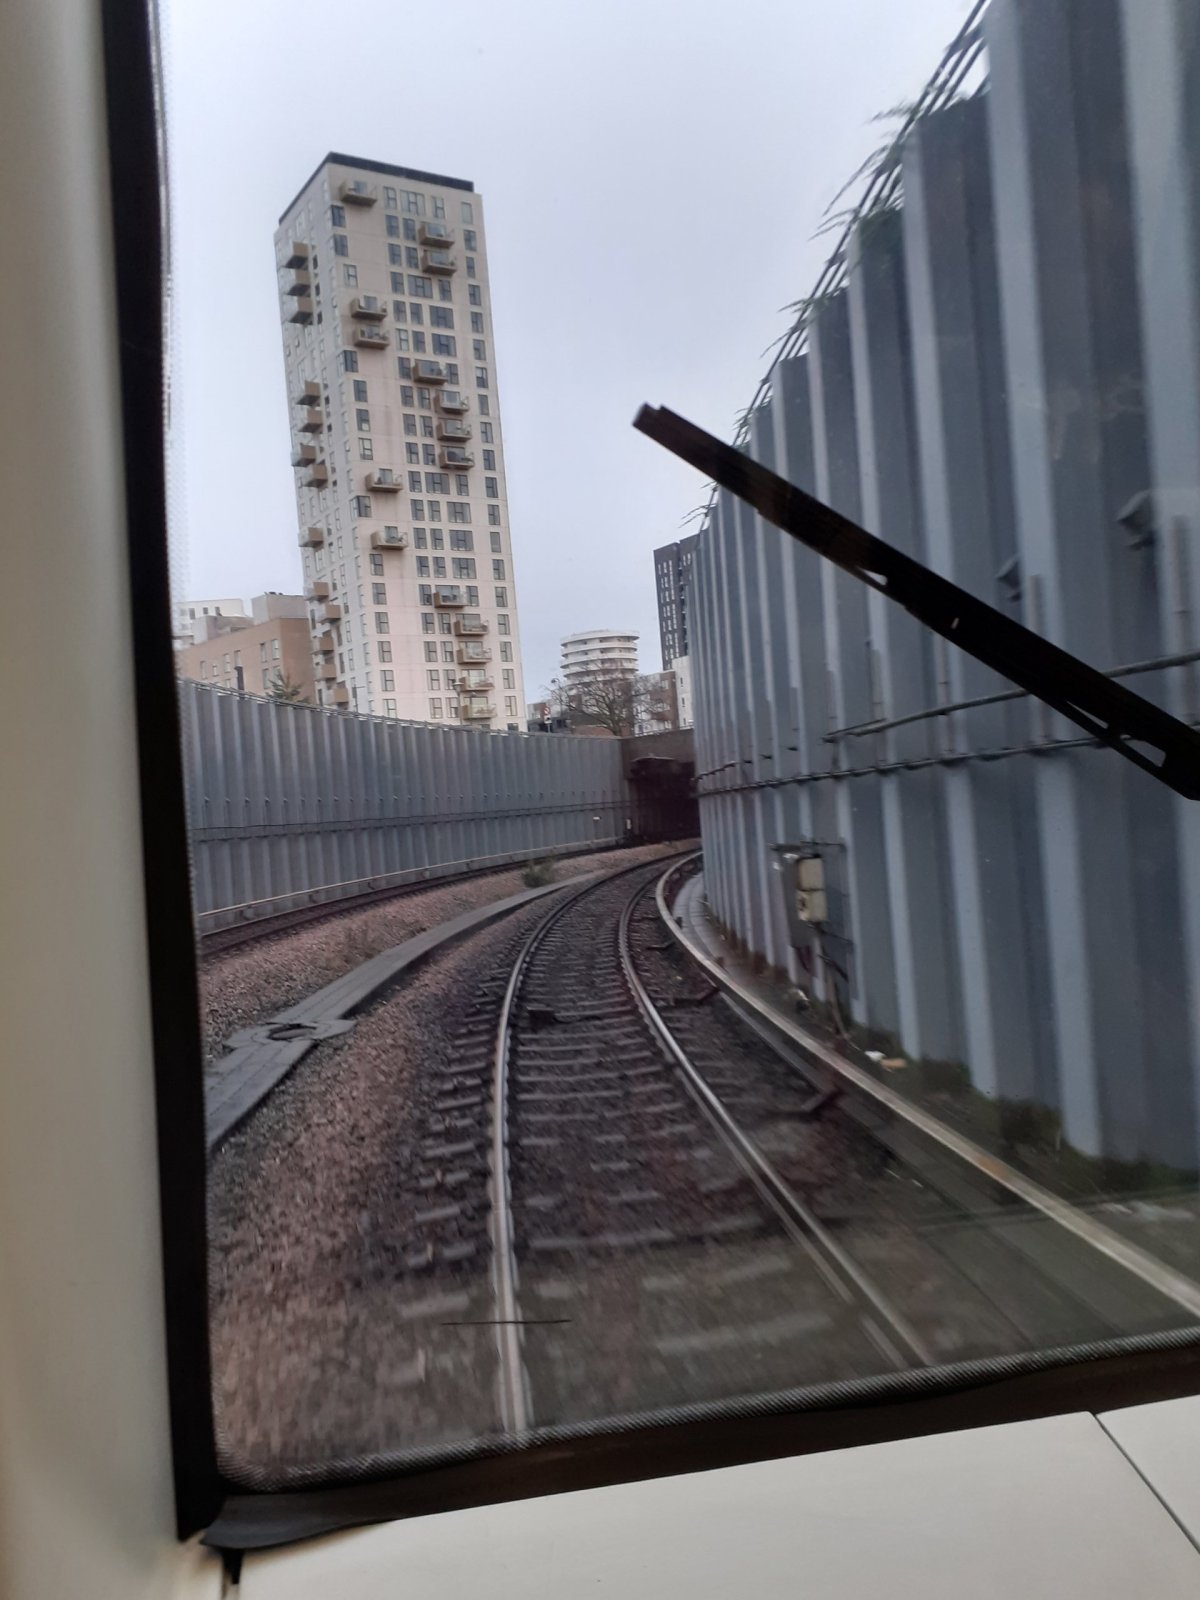 výhled z prvního vagonu metra